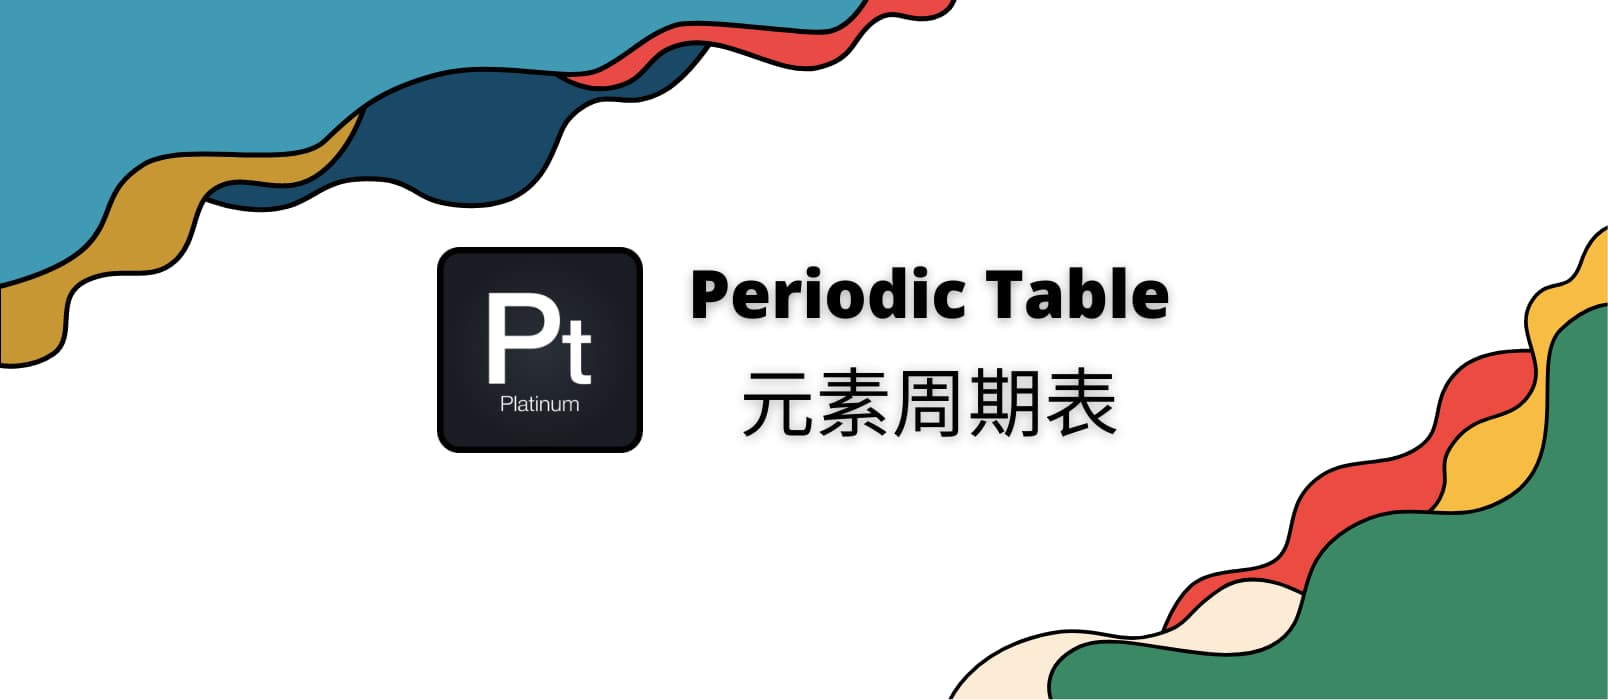 元素周期表 - 在 Android、iPhone、iPad 上，超过 4.8 评分的免费中文元素周期表应用